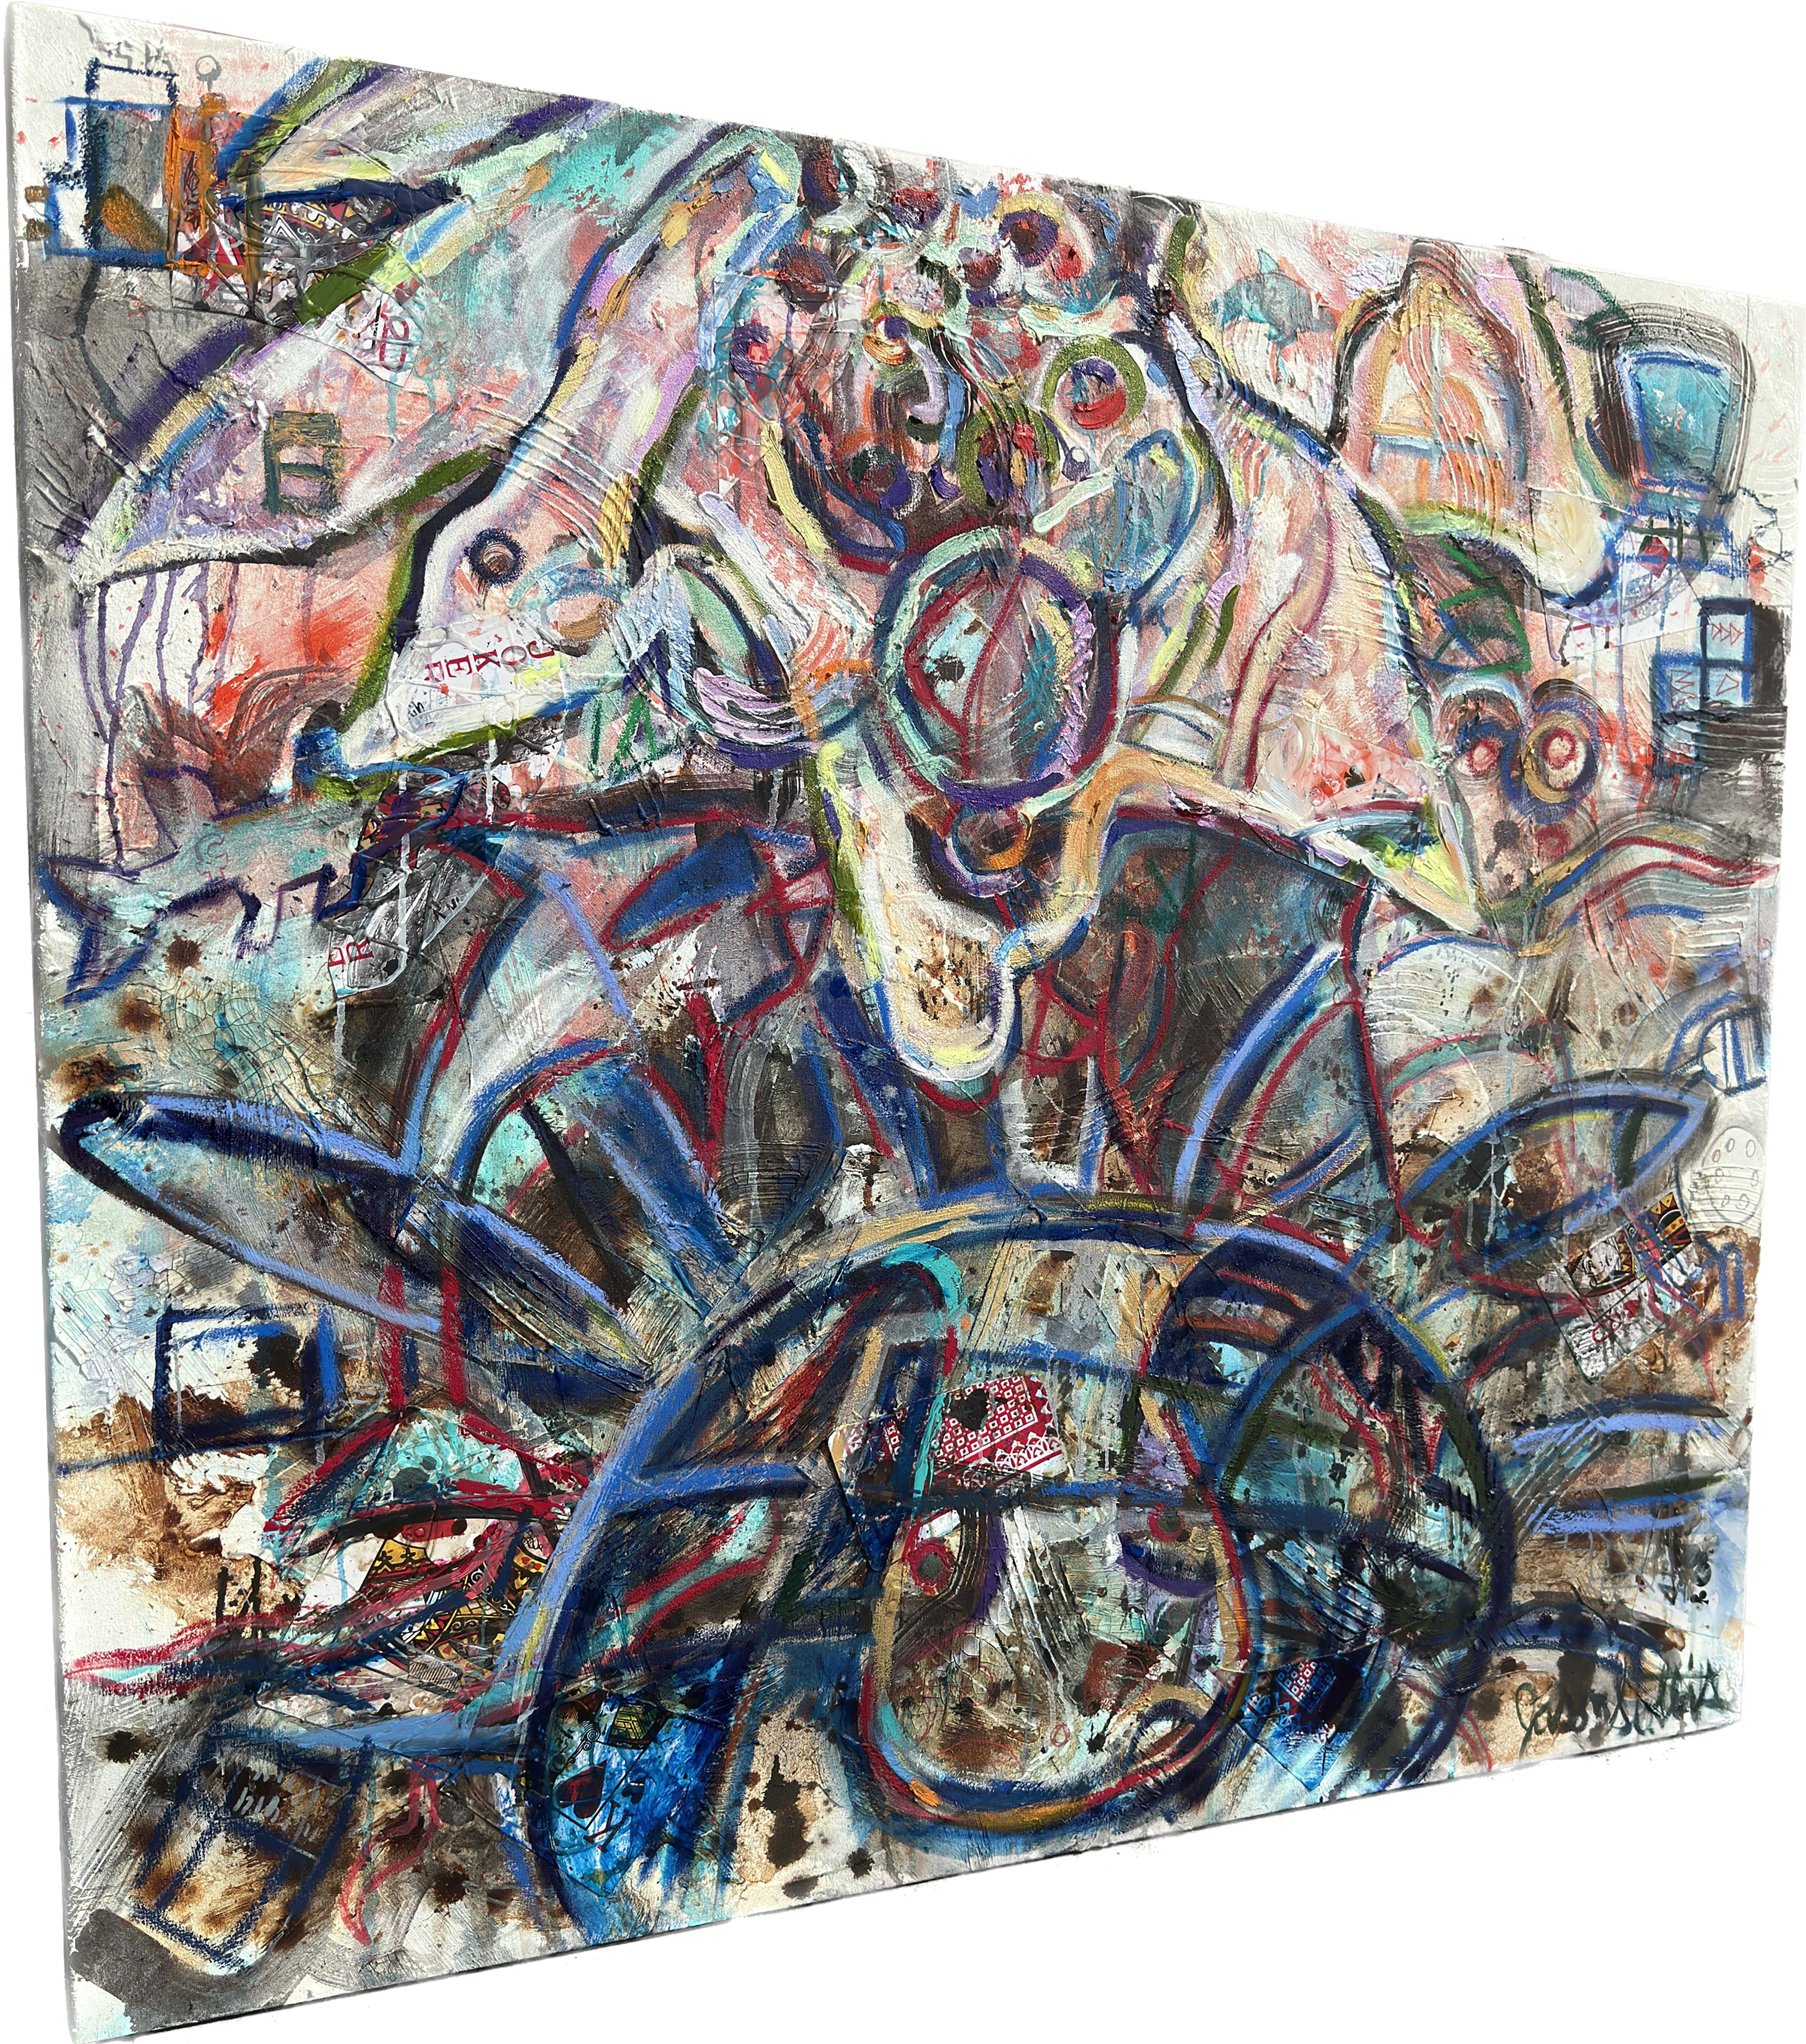 Une œuvre expressionniste abstraite audacieuse de l'artiste Jason Stallings. Cette peinture intitulée 